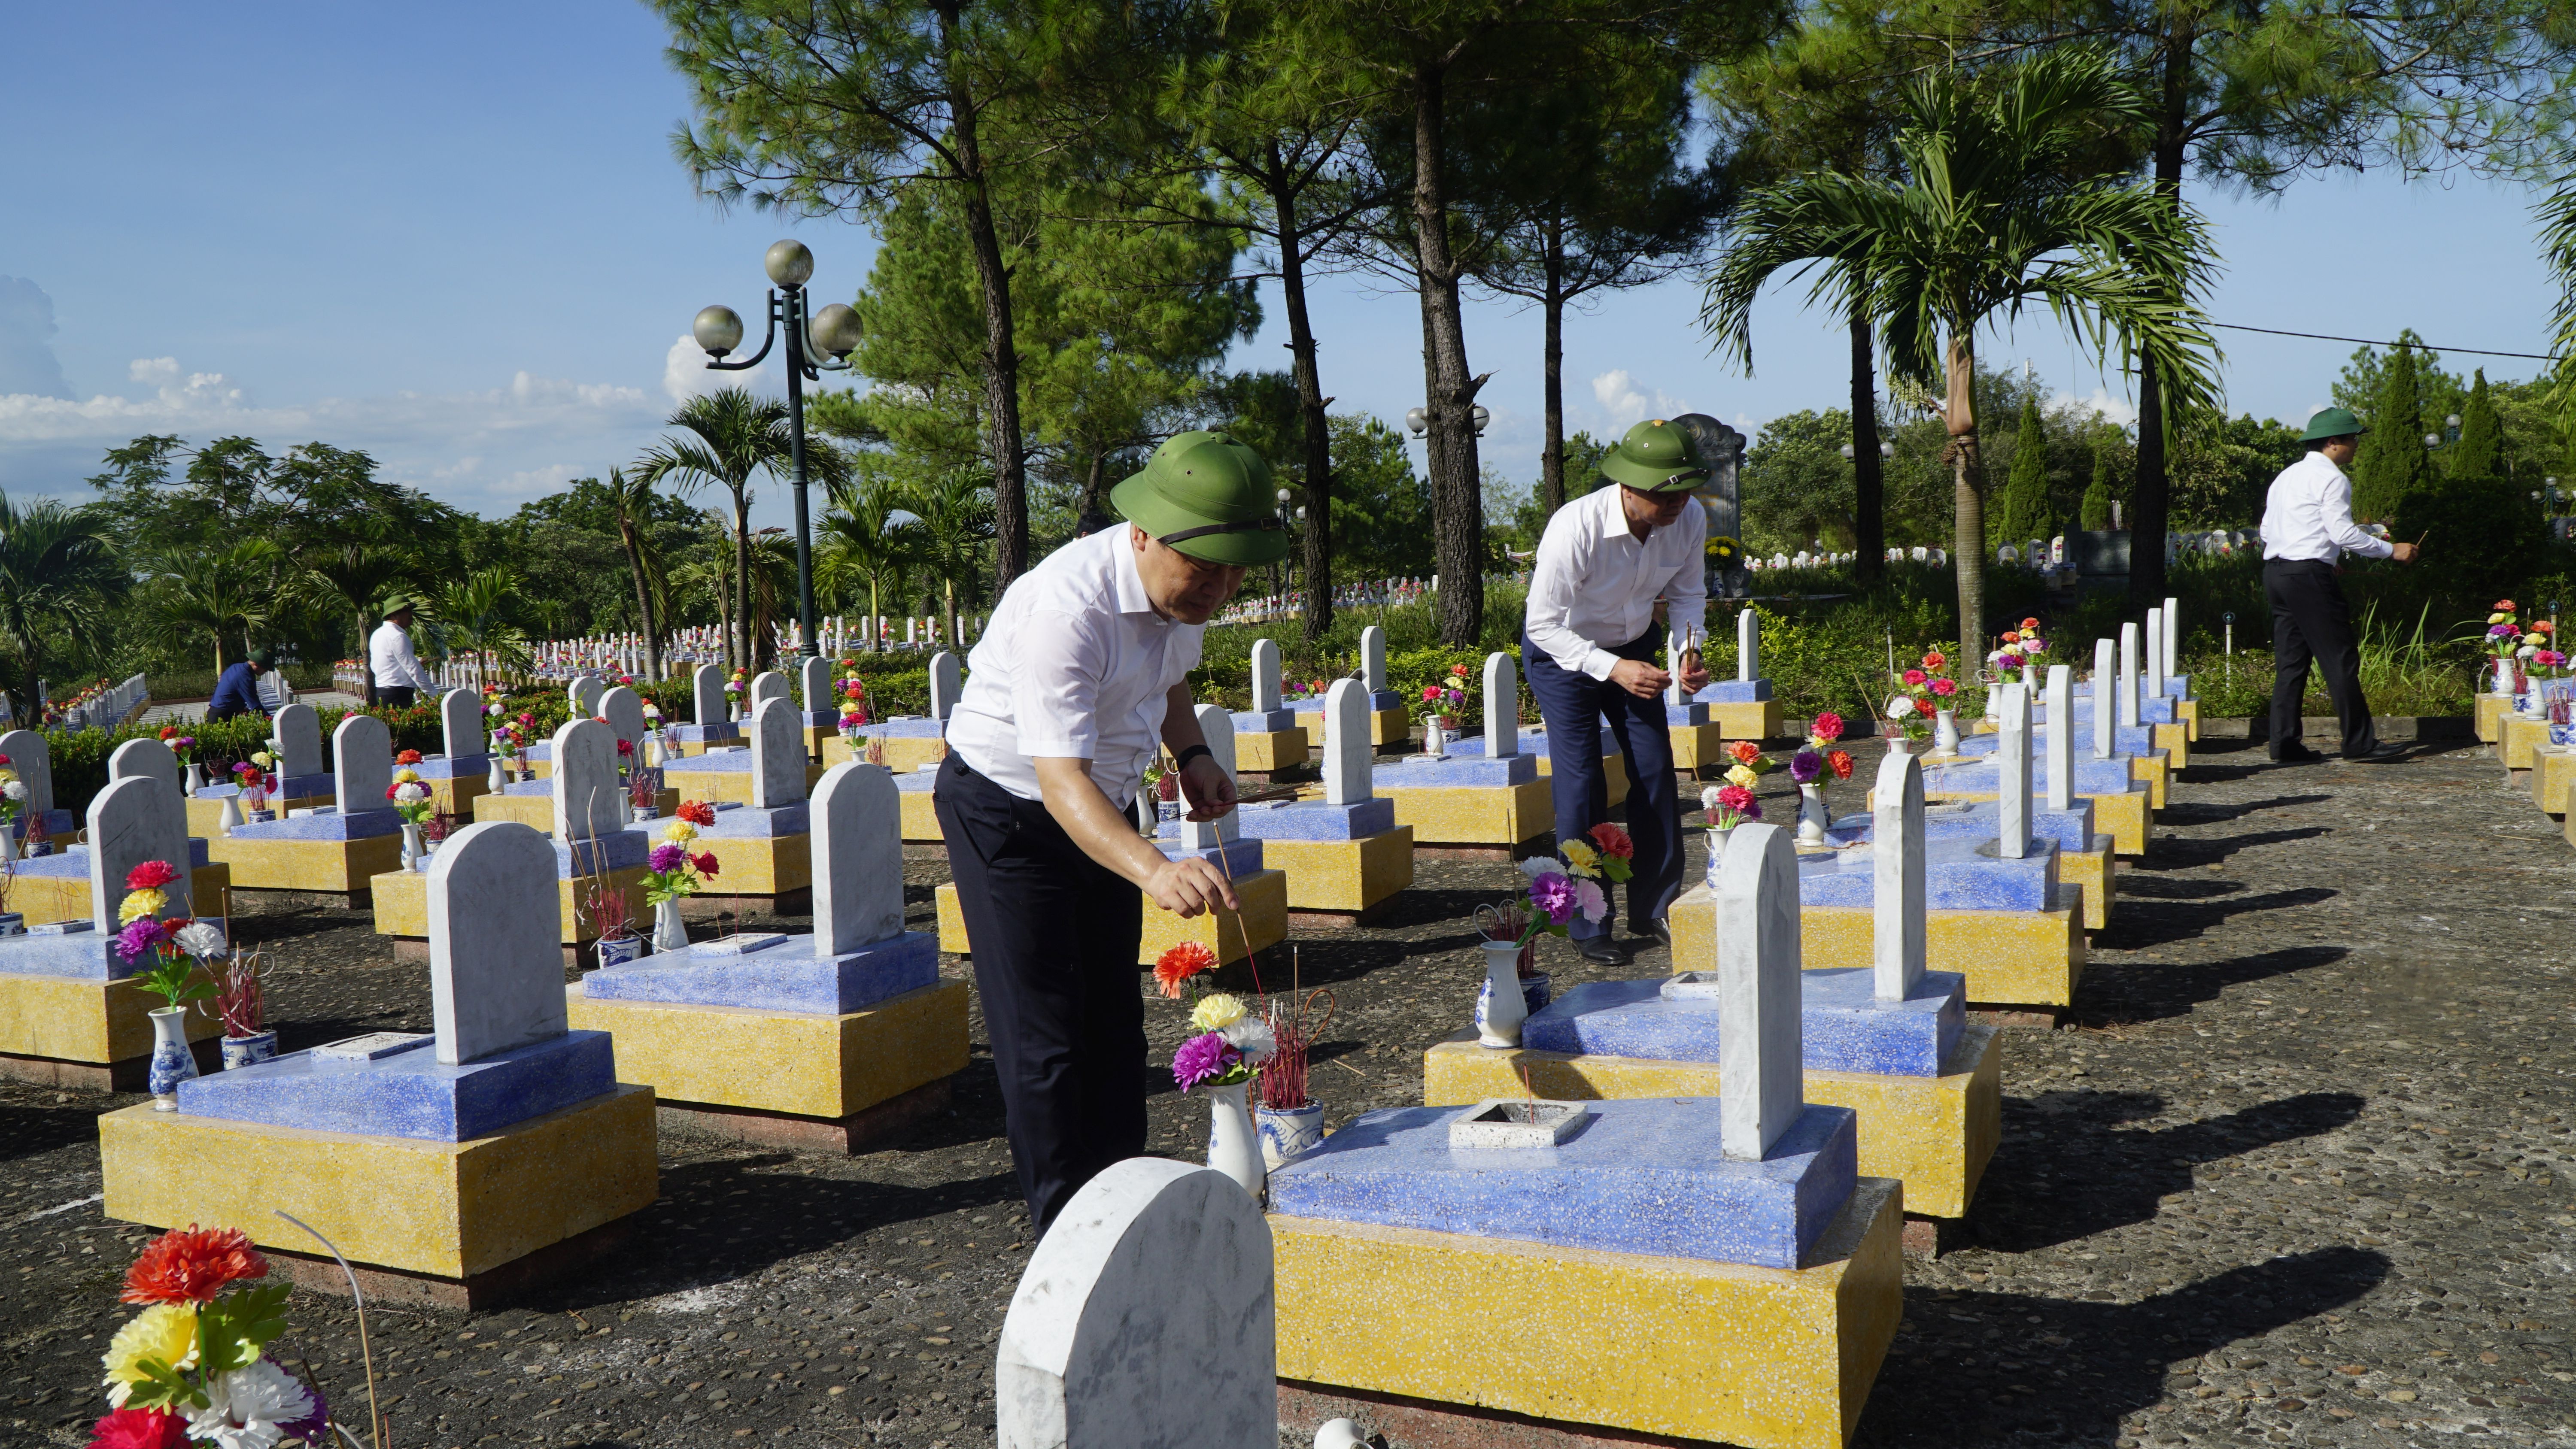 Đồng chí Bí thư Tỉnh ủy Vũ Đại Thắng thắp hương lên các phần mộ liệt sỹ tại Nghĩa trang liệt sỹ.